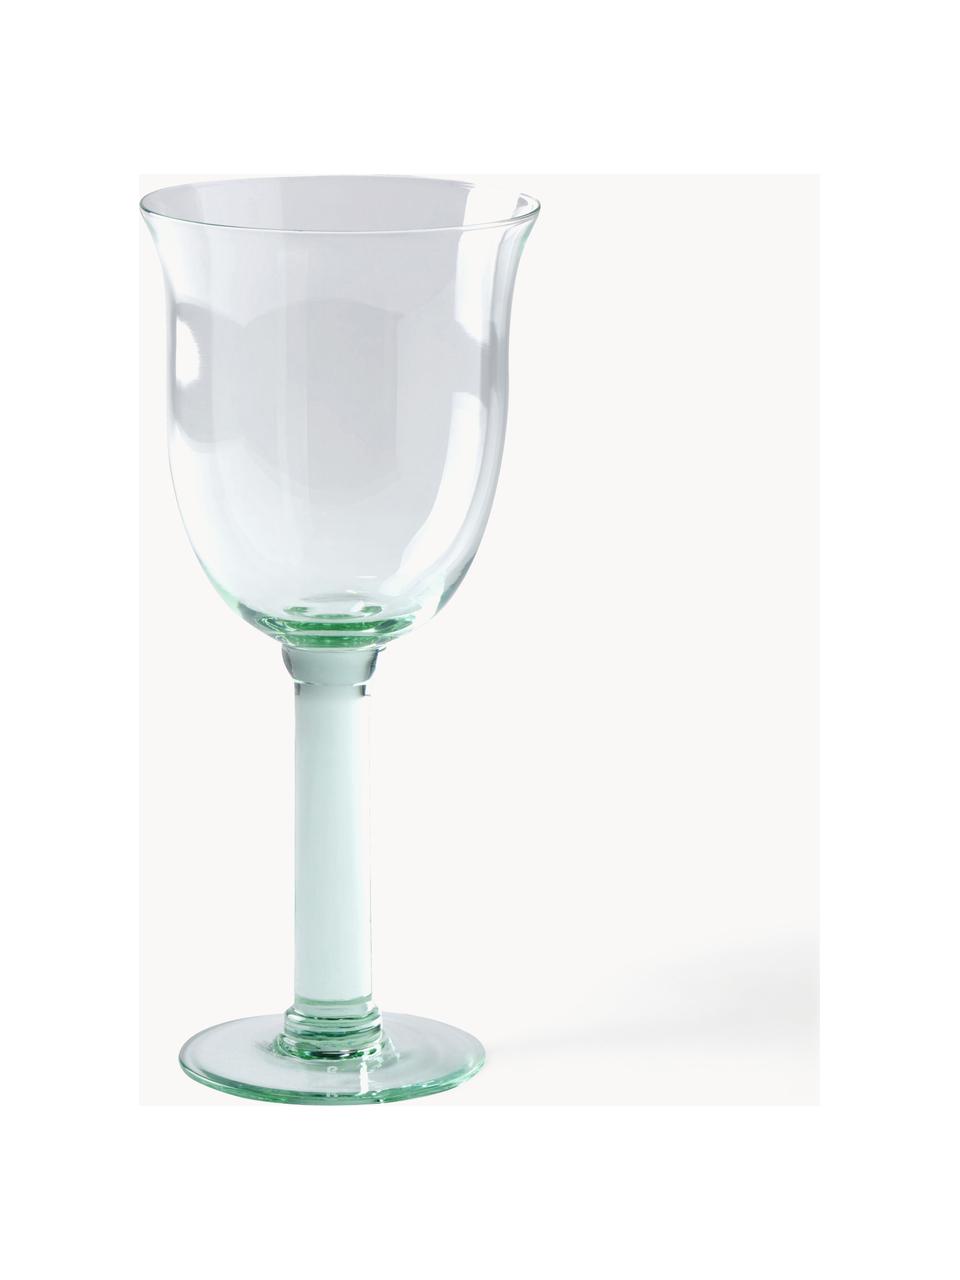 Bicchieri da vino rosso in vetro soffiato Corsica 6 pz, Vetro, Verde chiaro trasparente, Ø 9 x Alt. 23 cm,  480 ml